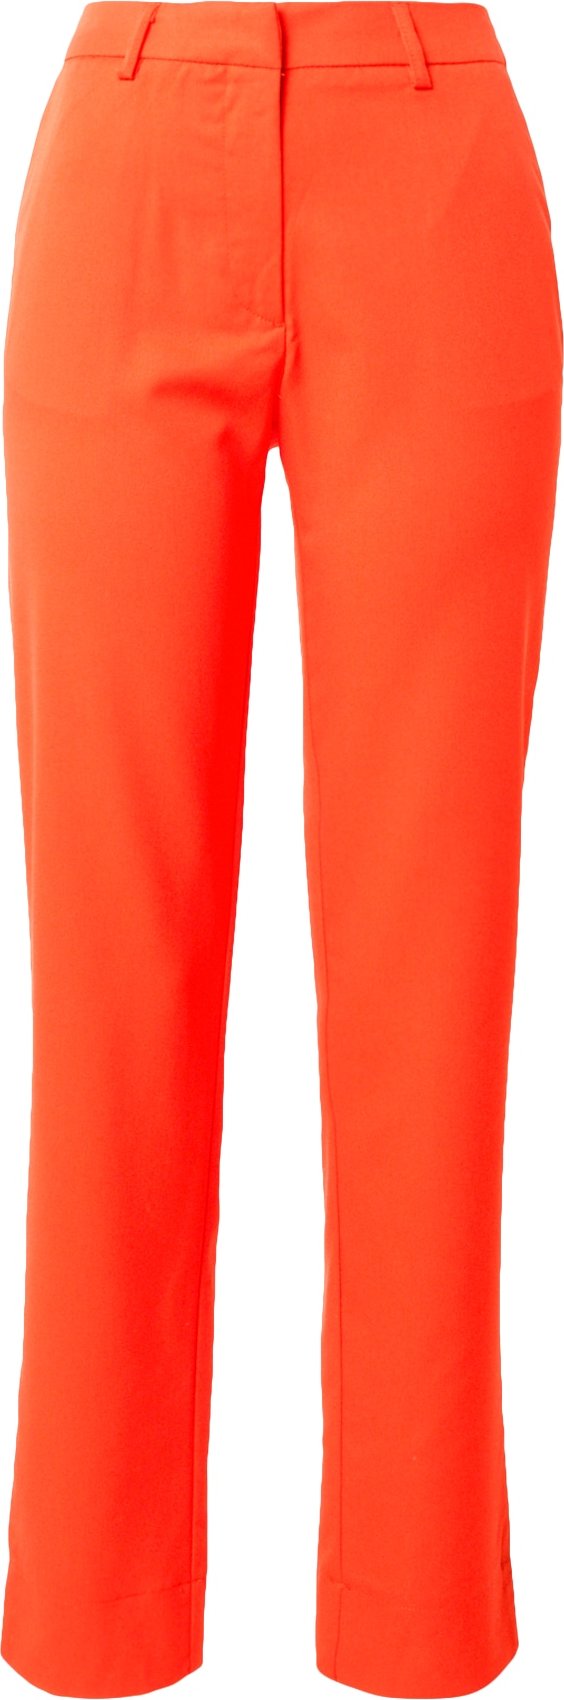 PIECES Chino kalhoty 'AMALIE' oranžově červená